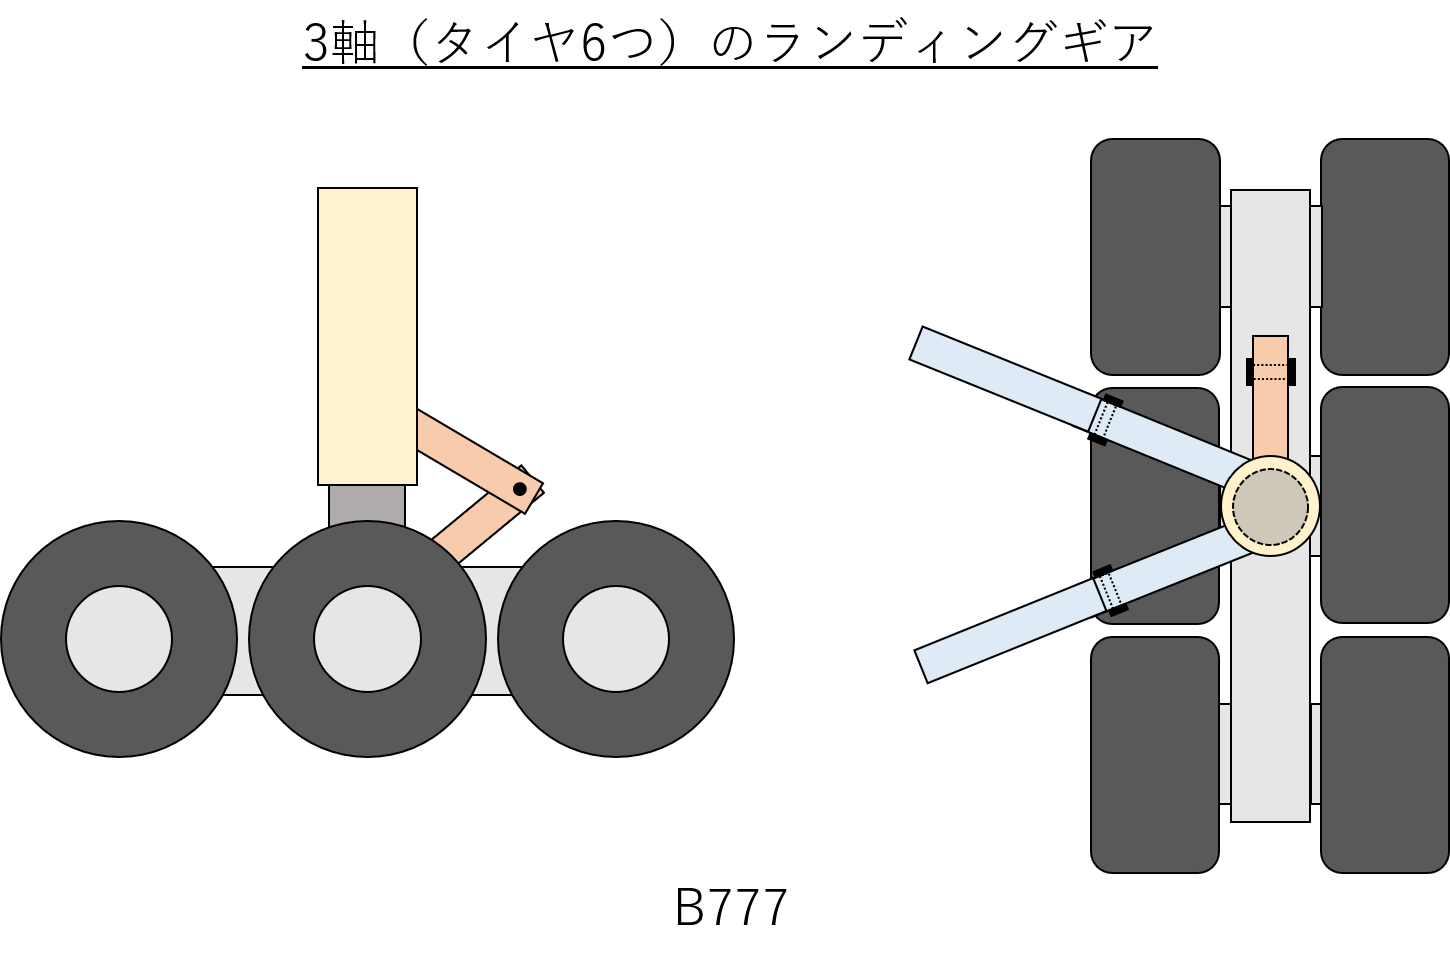 3軸のランディングギアのイメージ図